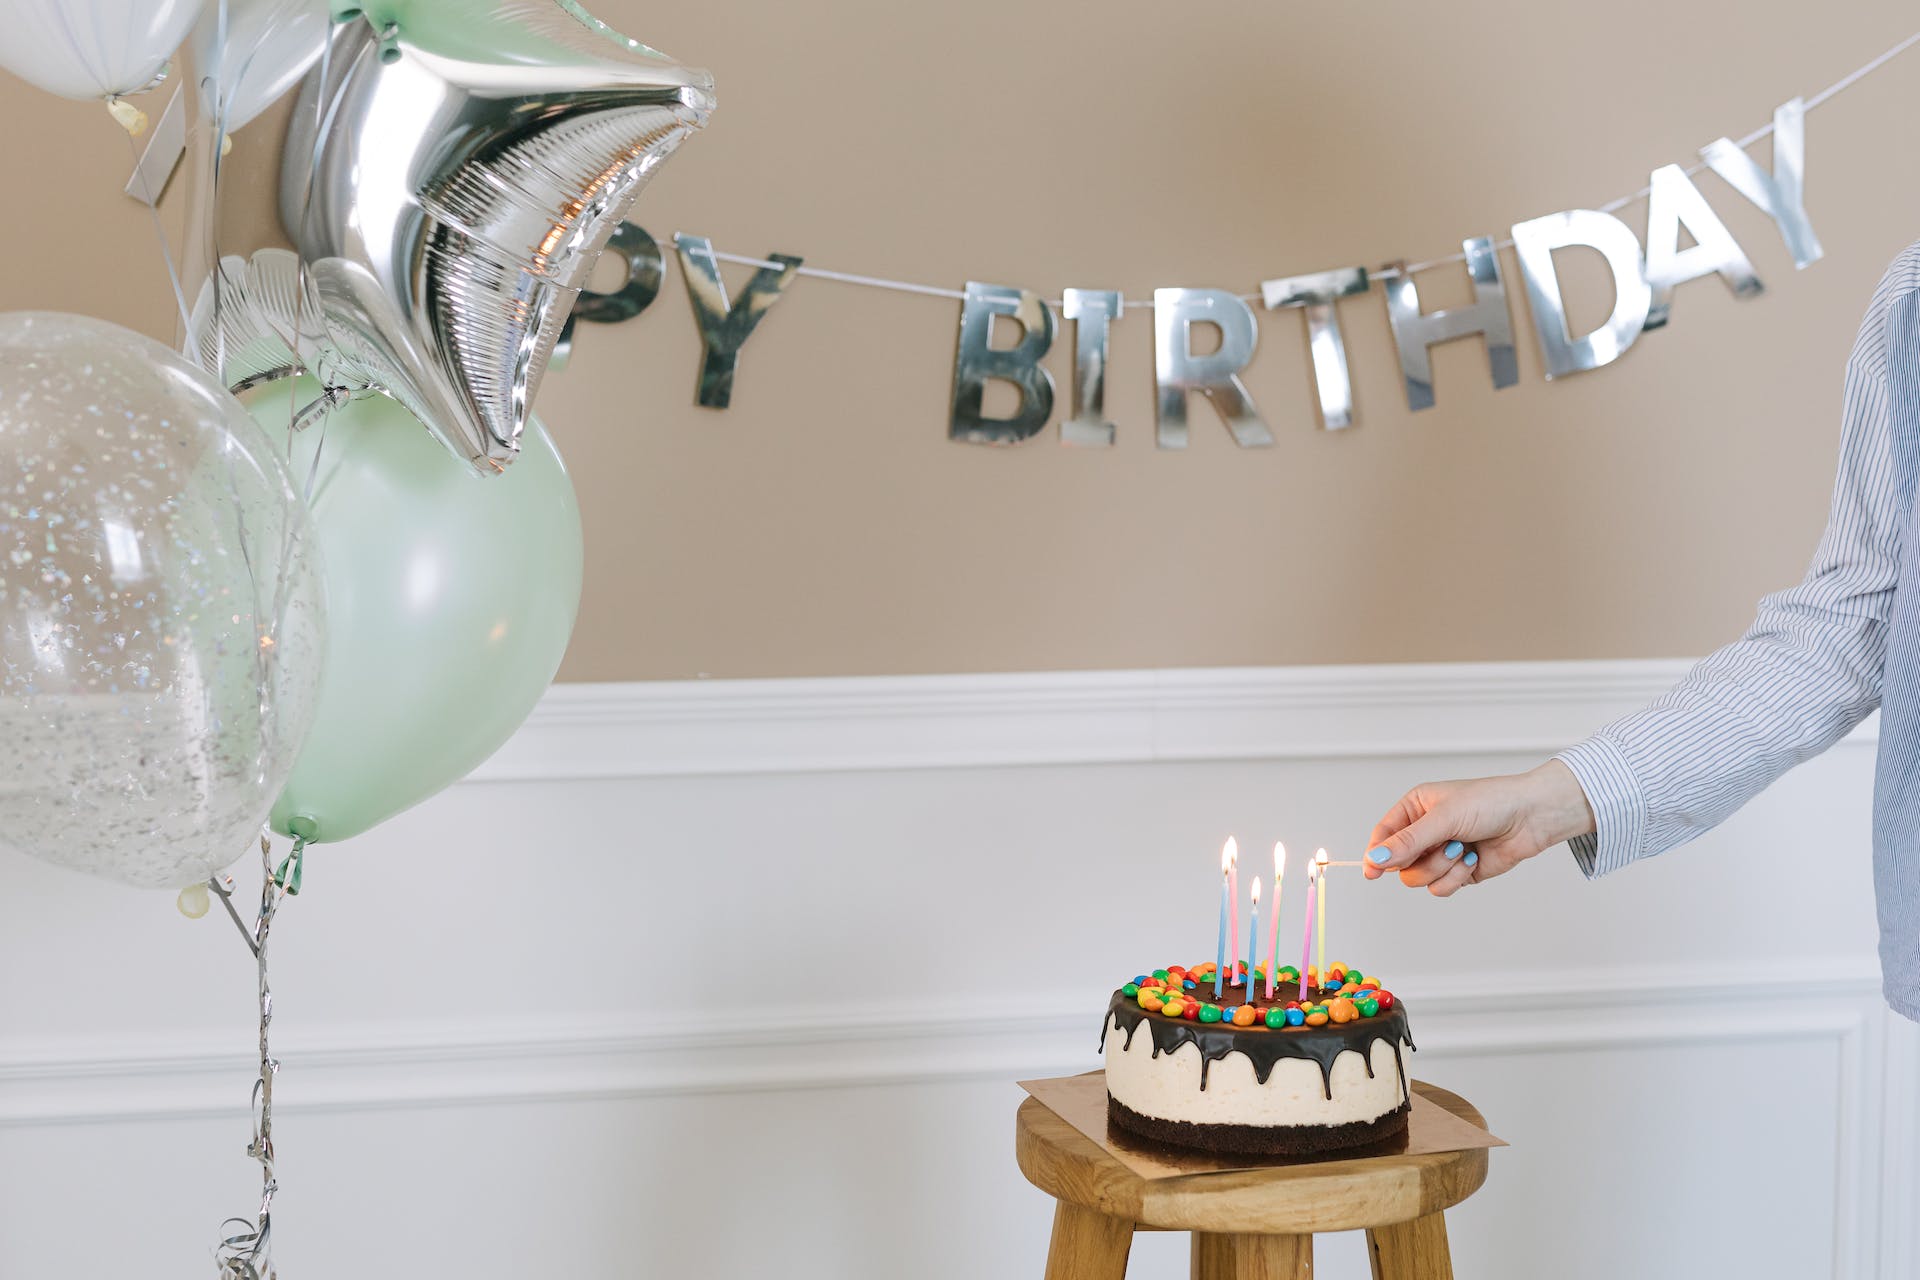 Une personne allumant une bougie sur un gâteau d'anniversaire | Source : Pexels